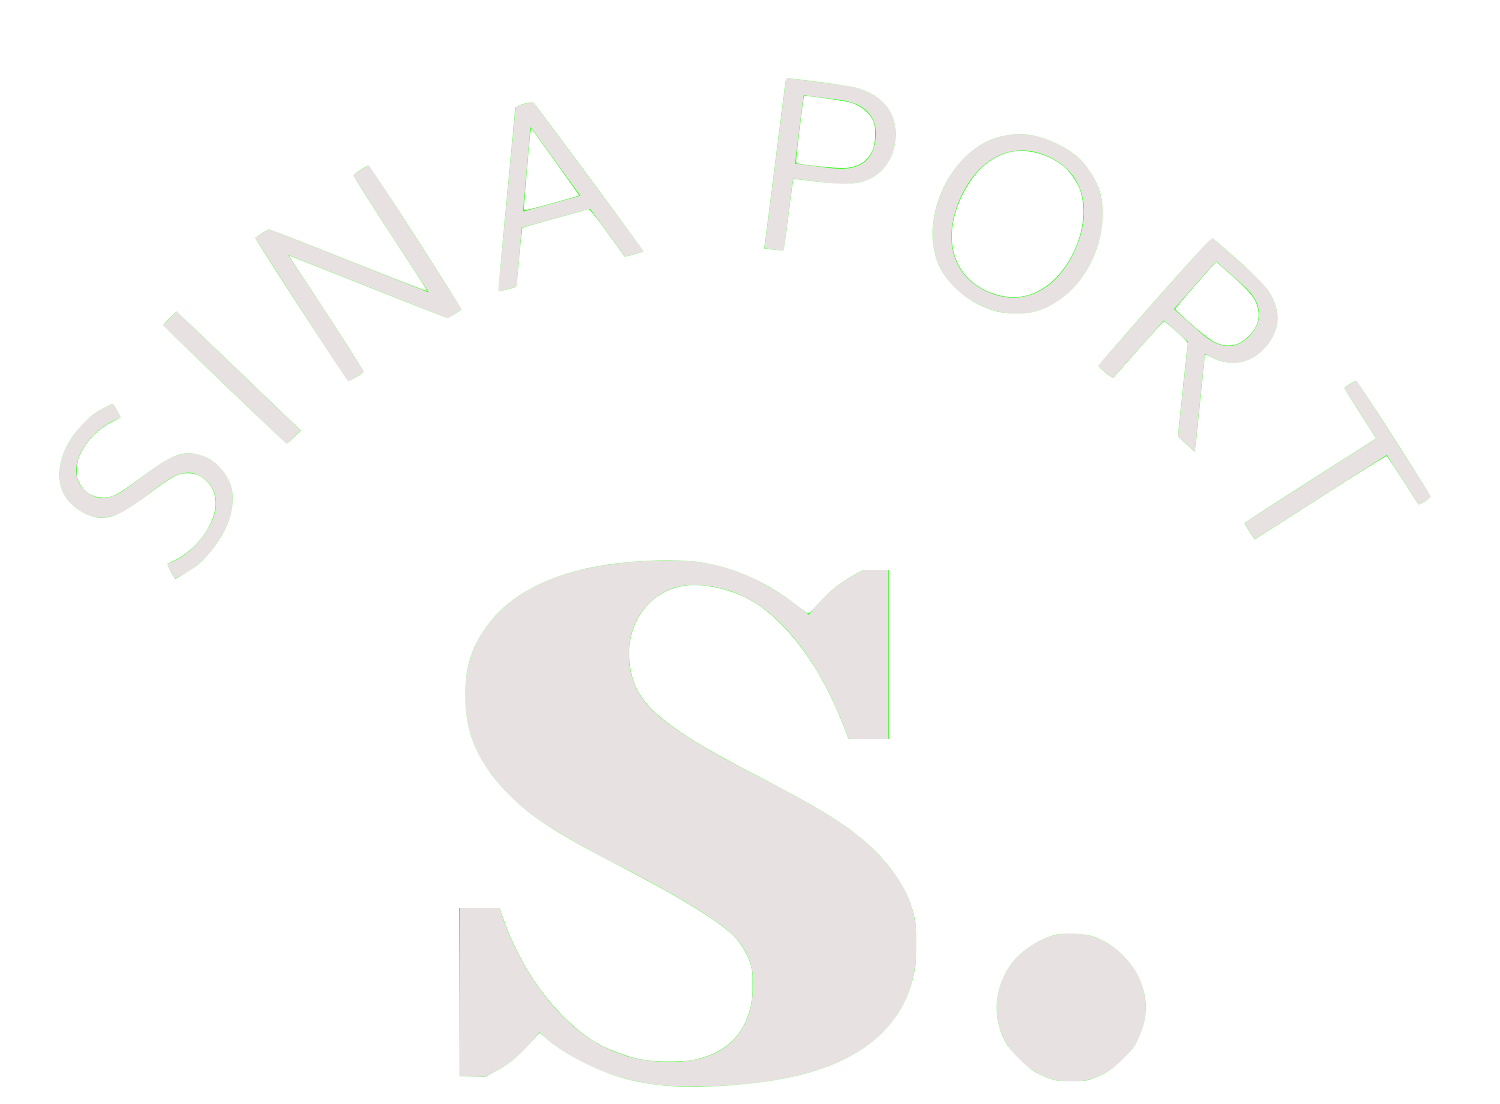 Sina Port